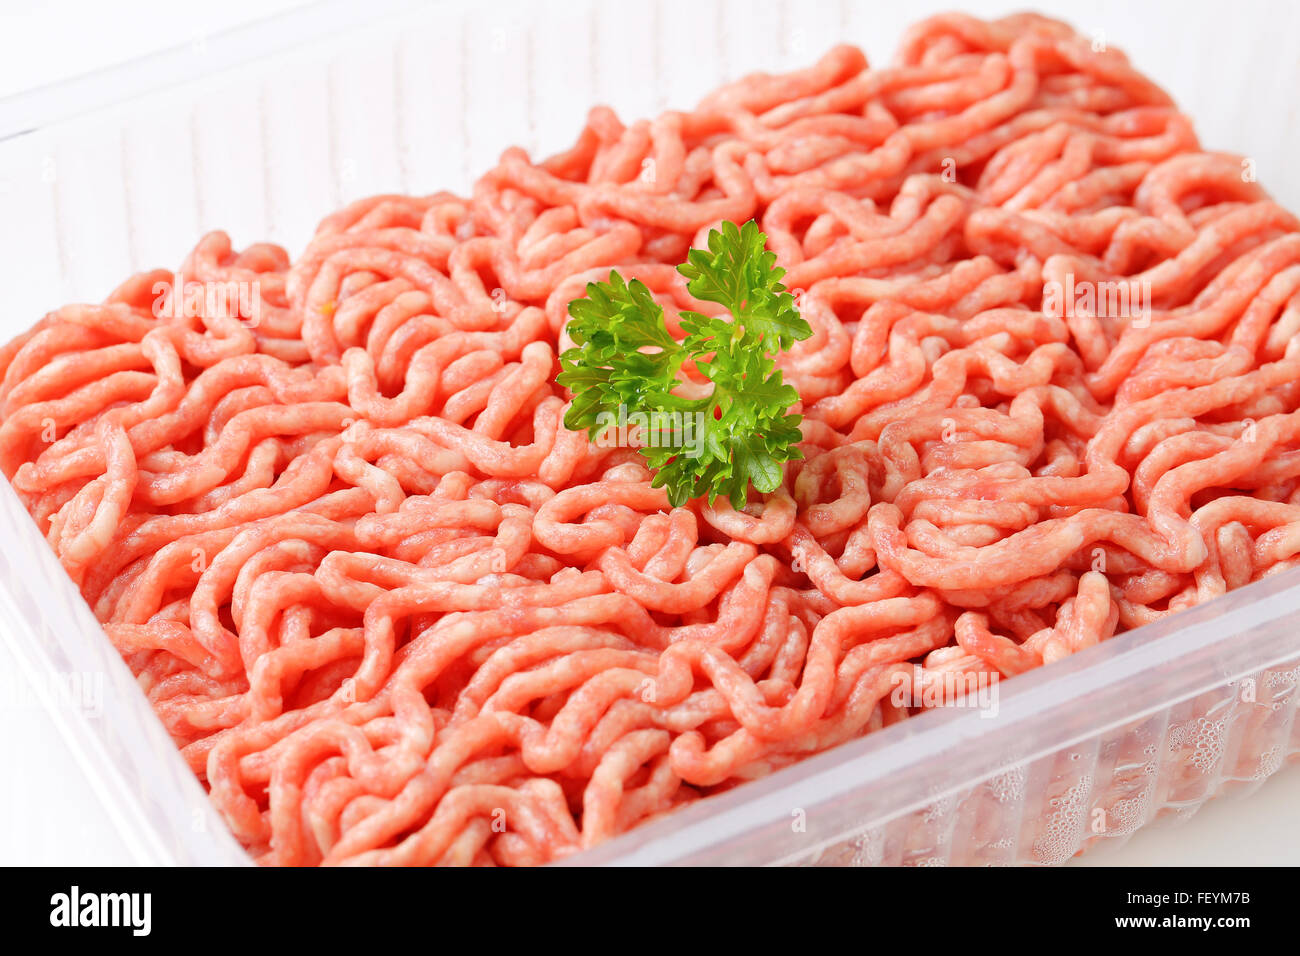 Cerca de carne picada y preparados de carne cruda en una caja de plástico Foto de stock